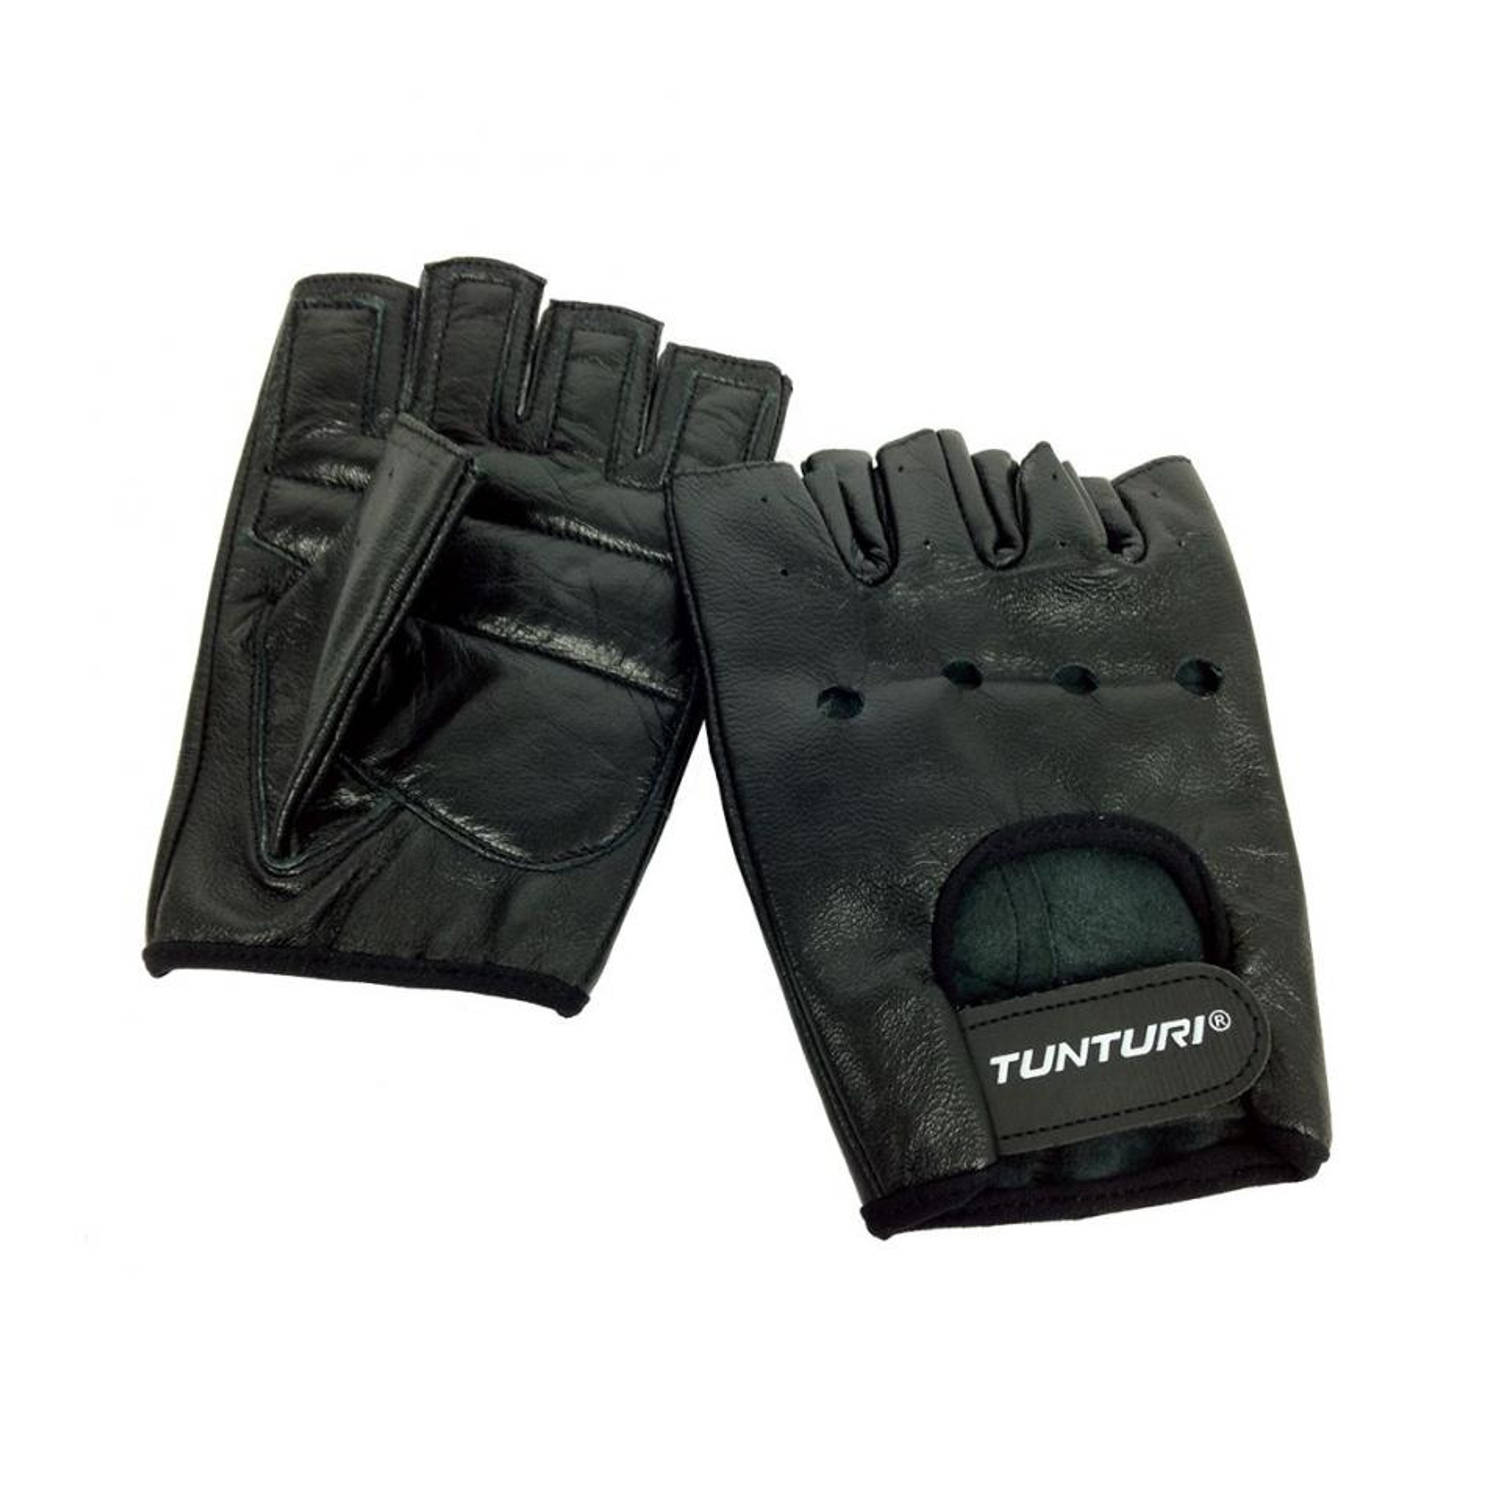 Tunturi Fitness Gloves - Fitness handschoenen